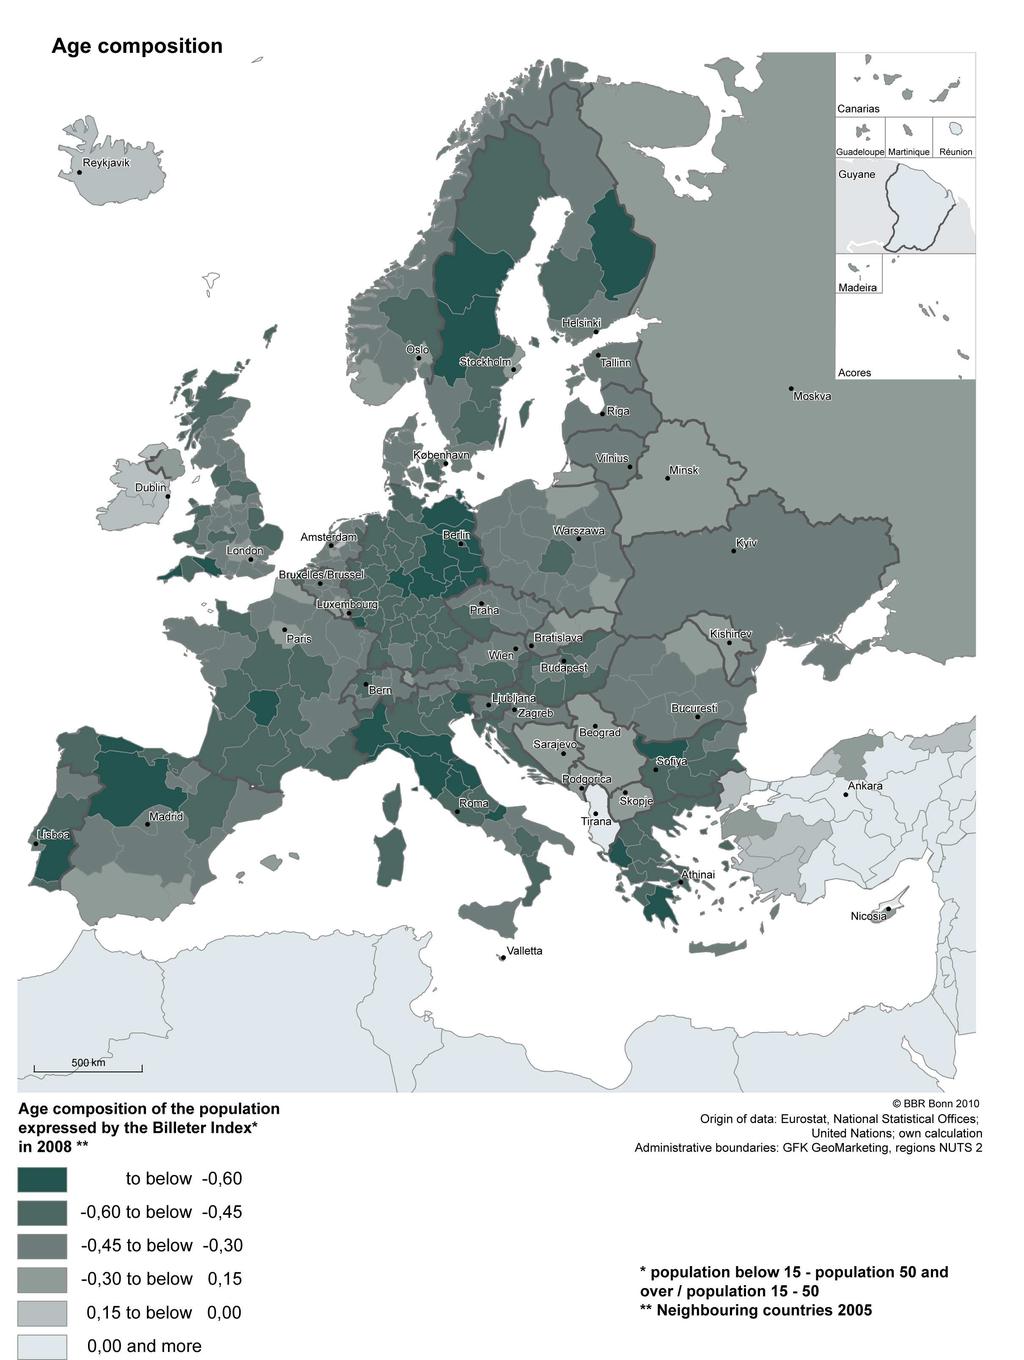 Wer ist alt, wer ist jung? Die Regionen in Europa zeigen eine gewisse Streubreite, Im Vergleich zu den nordafrikanischen Anrainerstaaten ist die Alterung weit fortgeschritten.